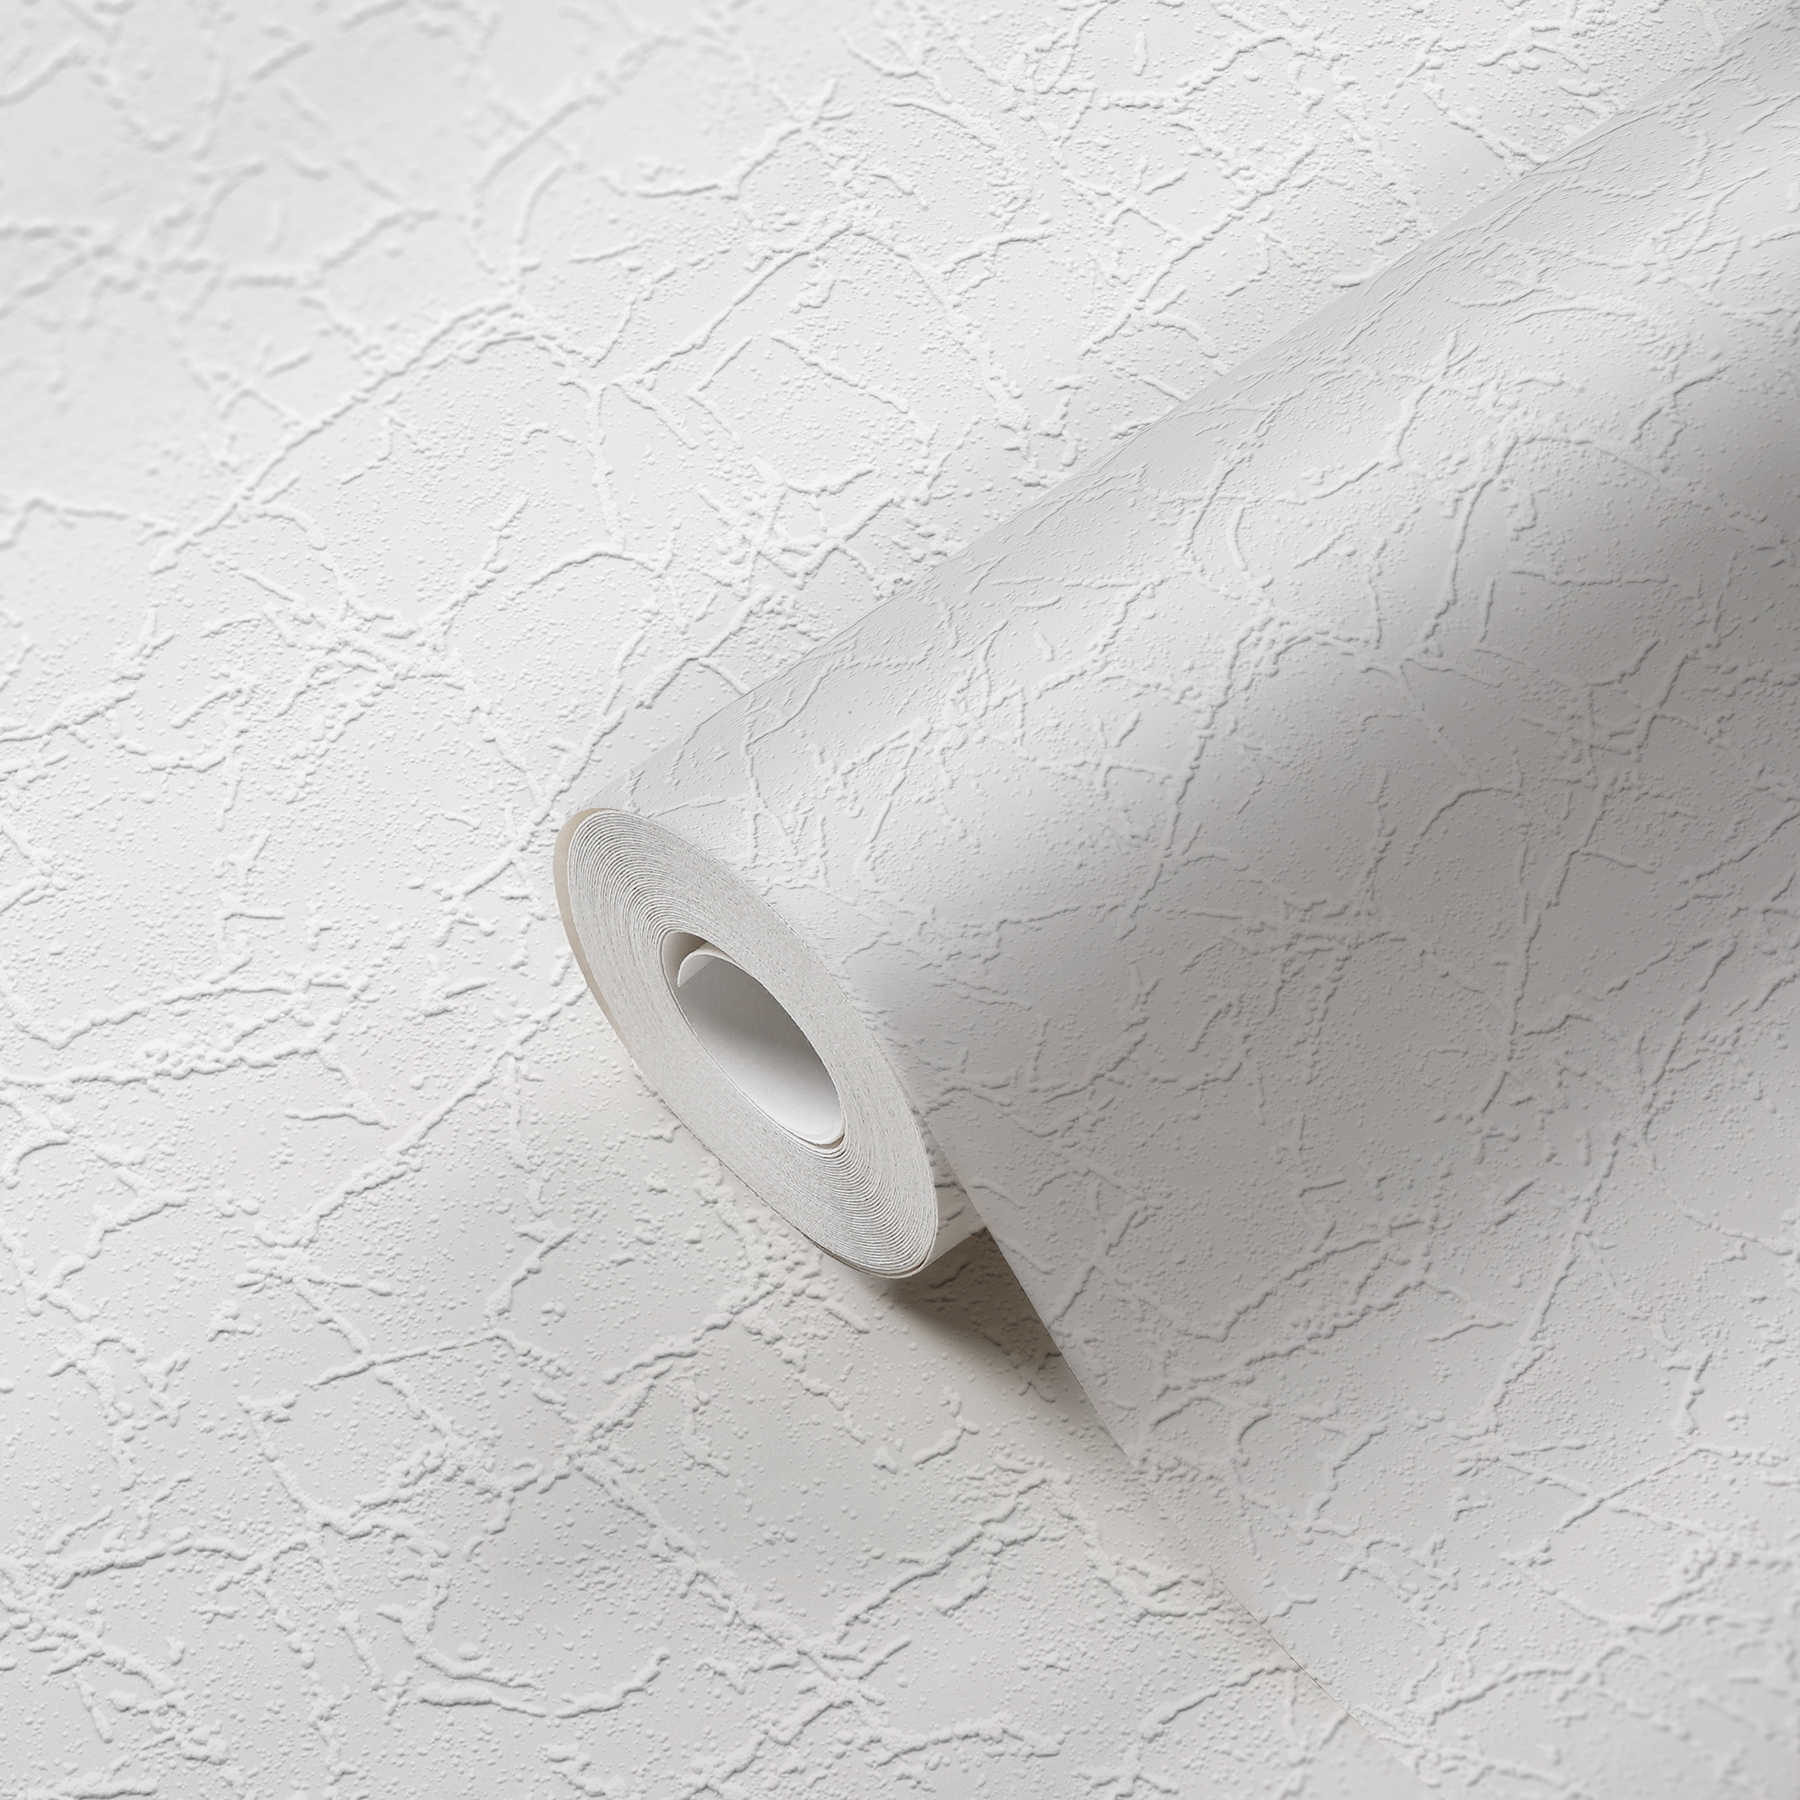             óptica de yeso llana de papel tapiz patrón de estructura de yeso - blanco
        